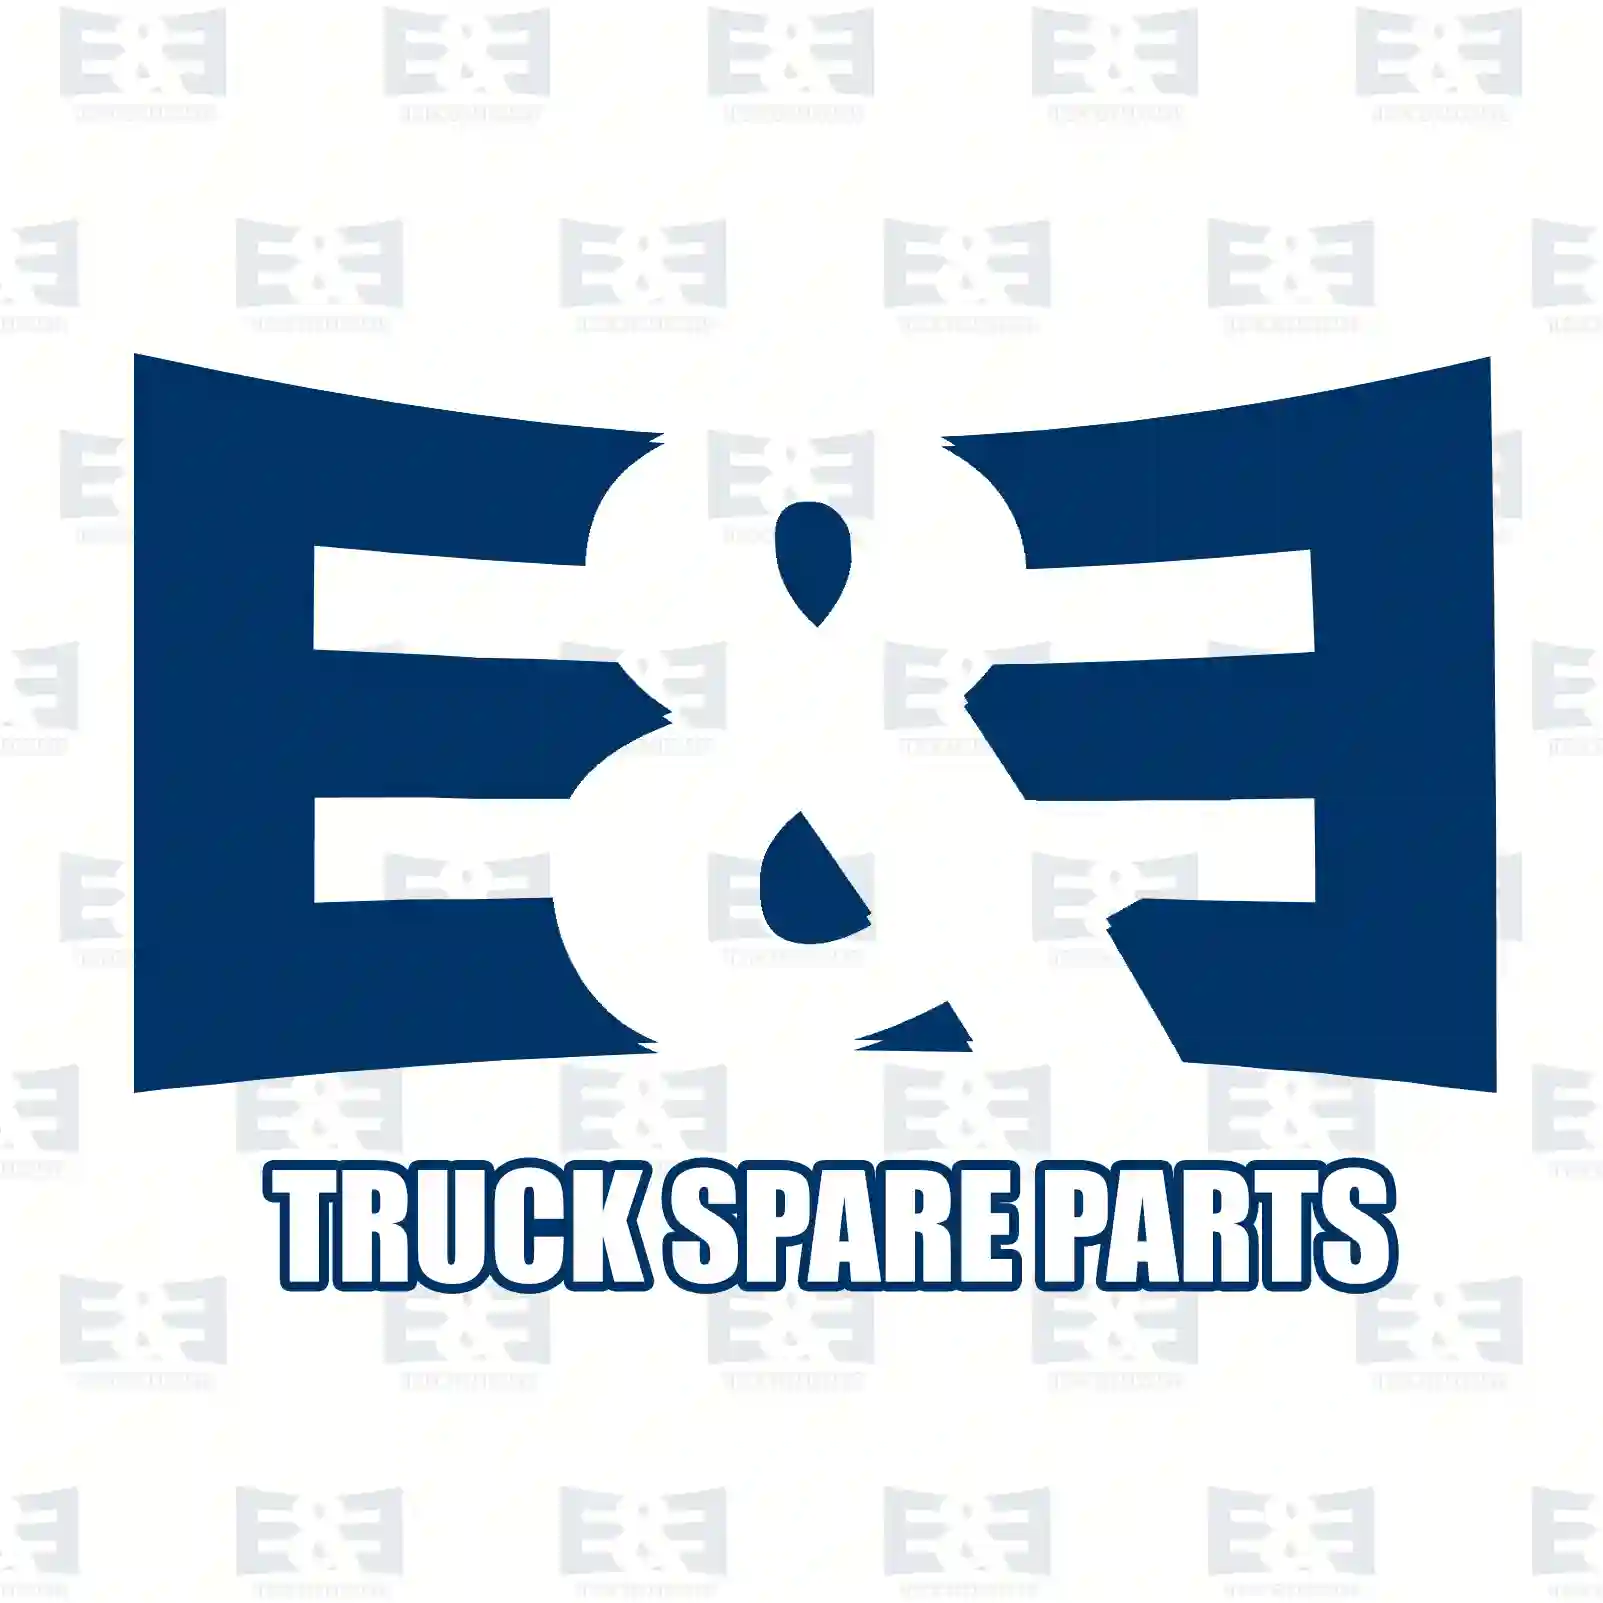 Engine bracket, front, right, 2E2207204, 8188951 ||  2E2207204 E&E Truck Spare Parts | Truck Spare Parts, Auotomotive Spare Parts Engine bracket, front, right, 2E2207204, 8188951 ||  2E2207204 E&E Truck Spare Parts | Truck Spare Parts, Auotomotive Spare Parts